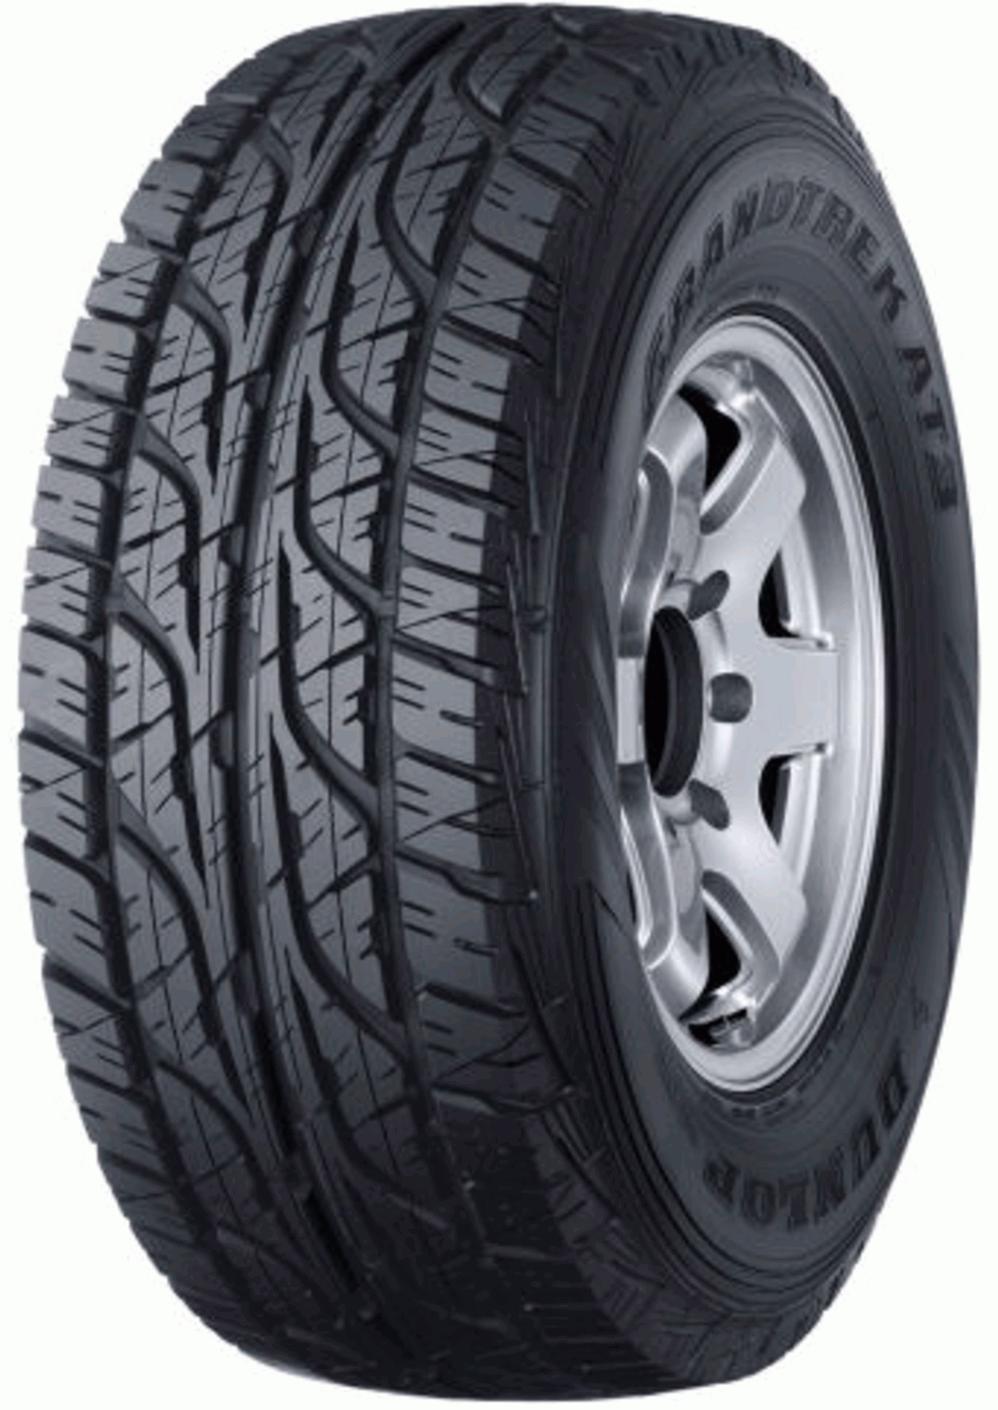 Dunlop Grandtrek AT3 - Tyre reviews and ratings